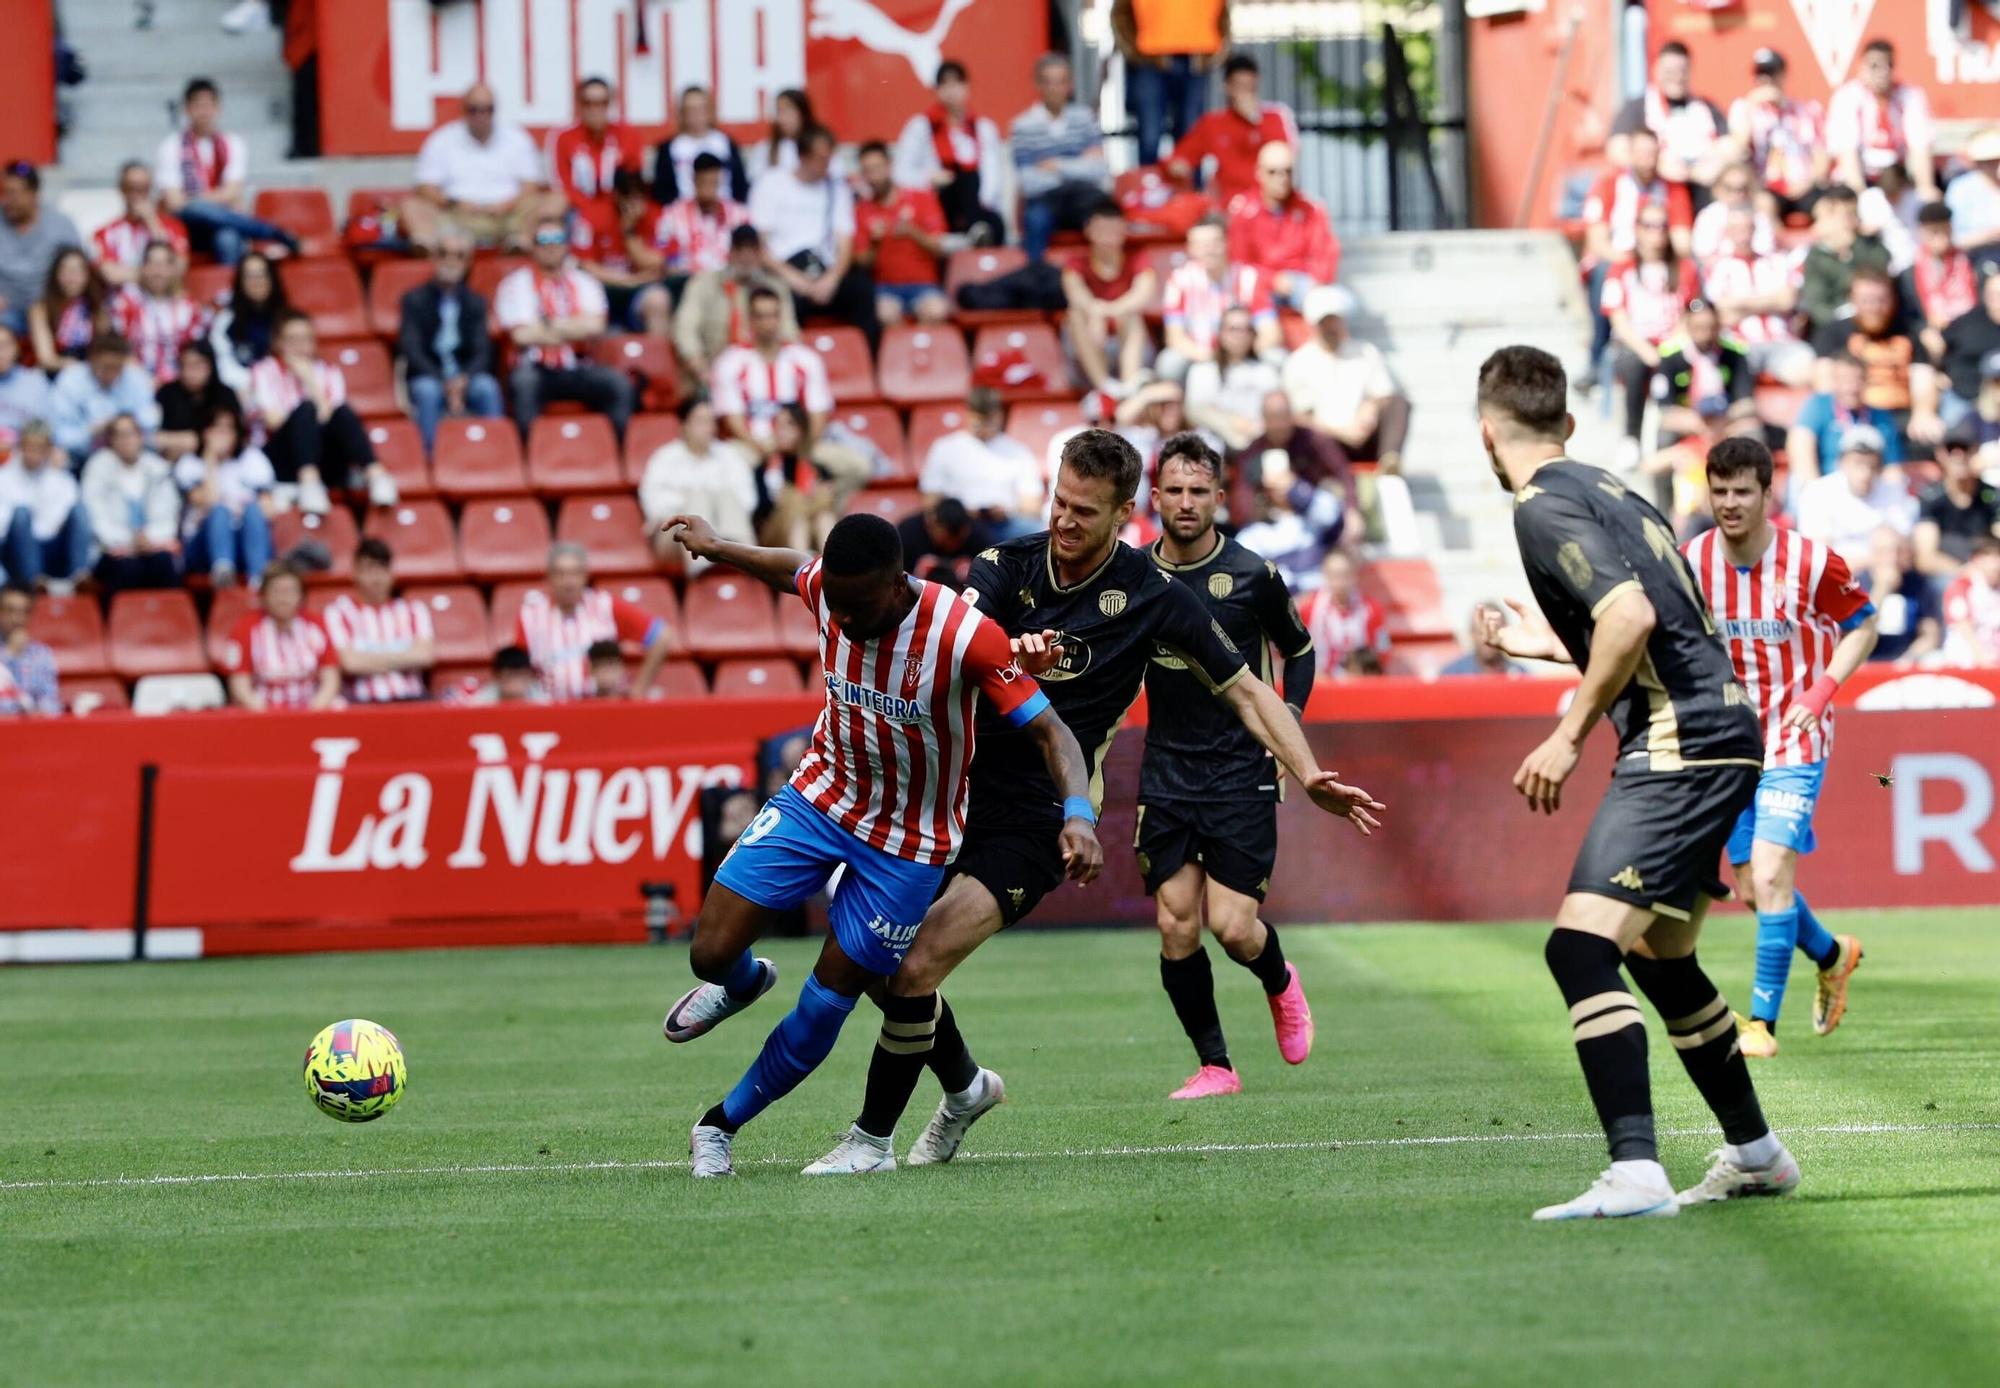 EN IMÁGENES: El Sporting vence al Lugo en El Molinón con un gran ambiente